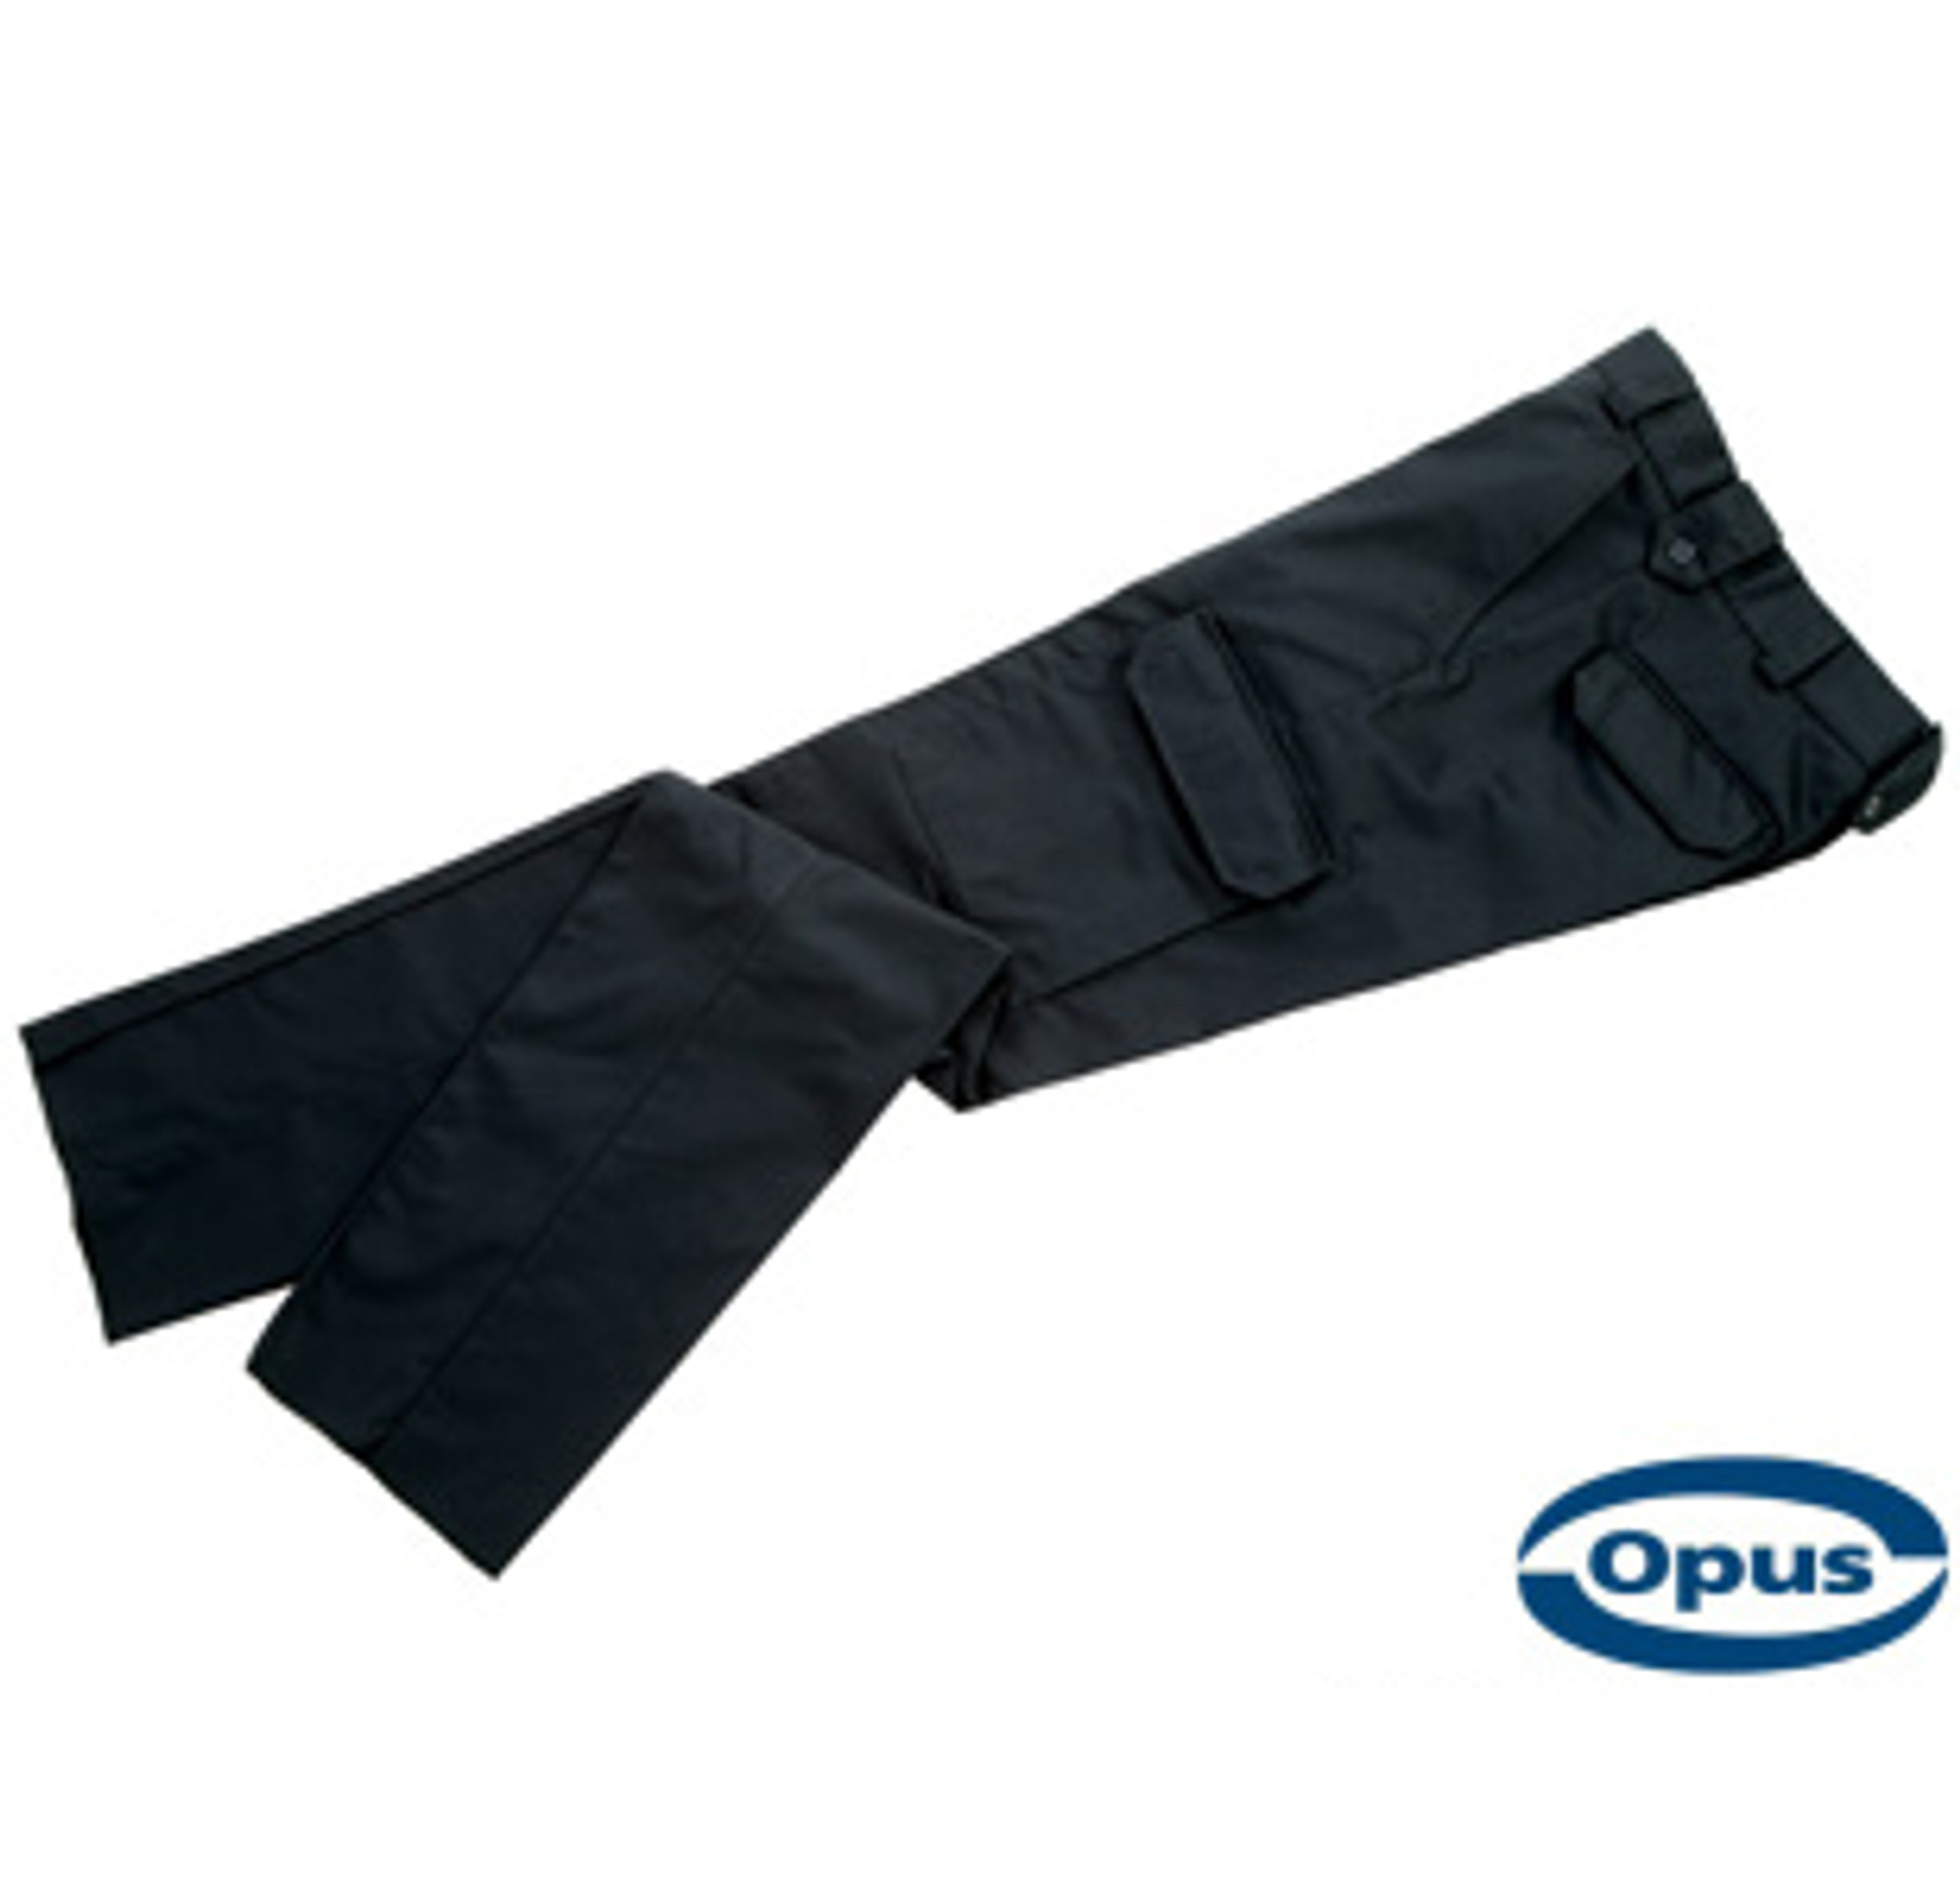 Opus CP80 Deluxe Cargo Pants